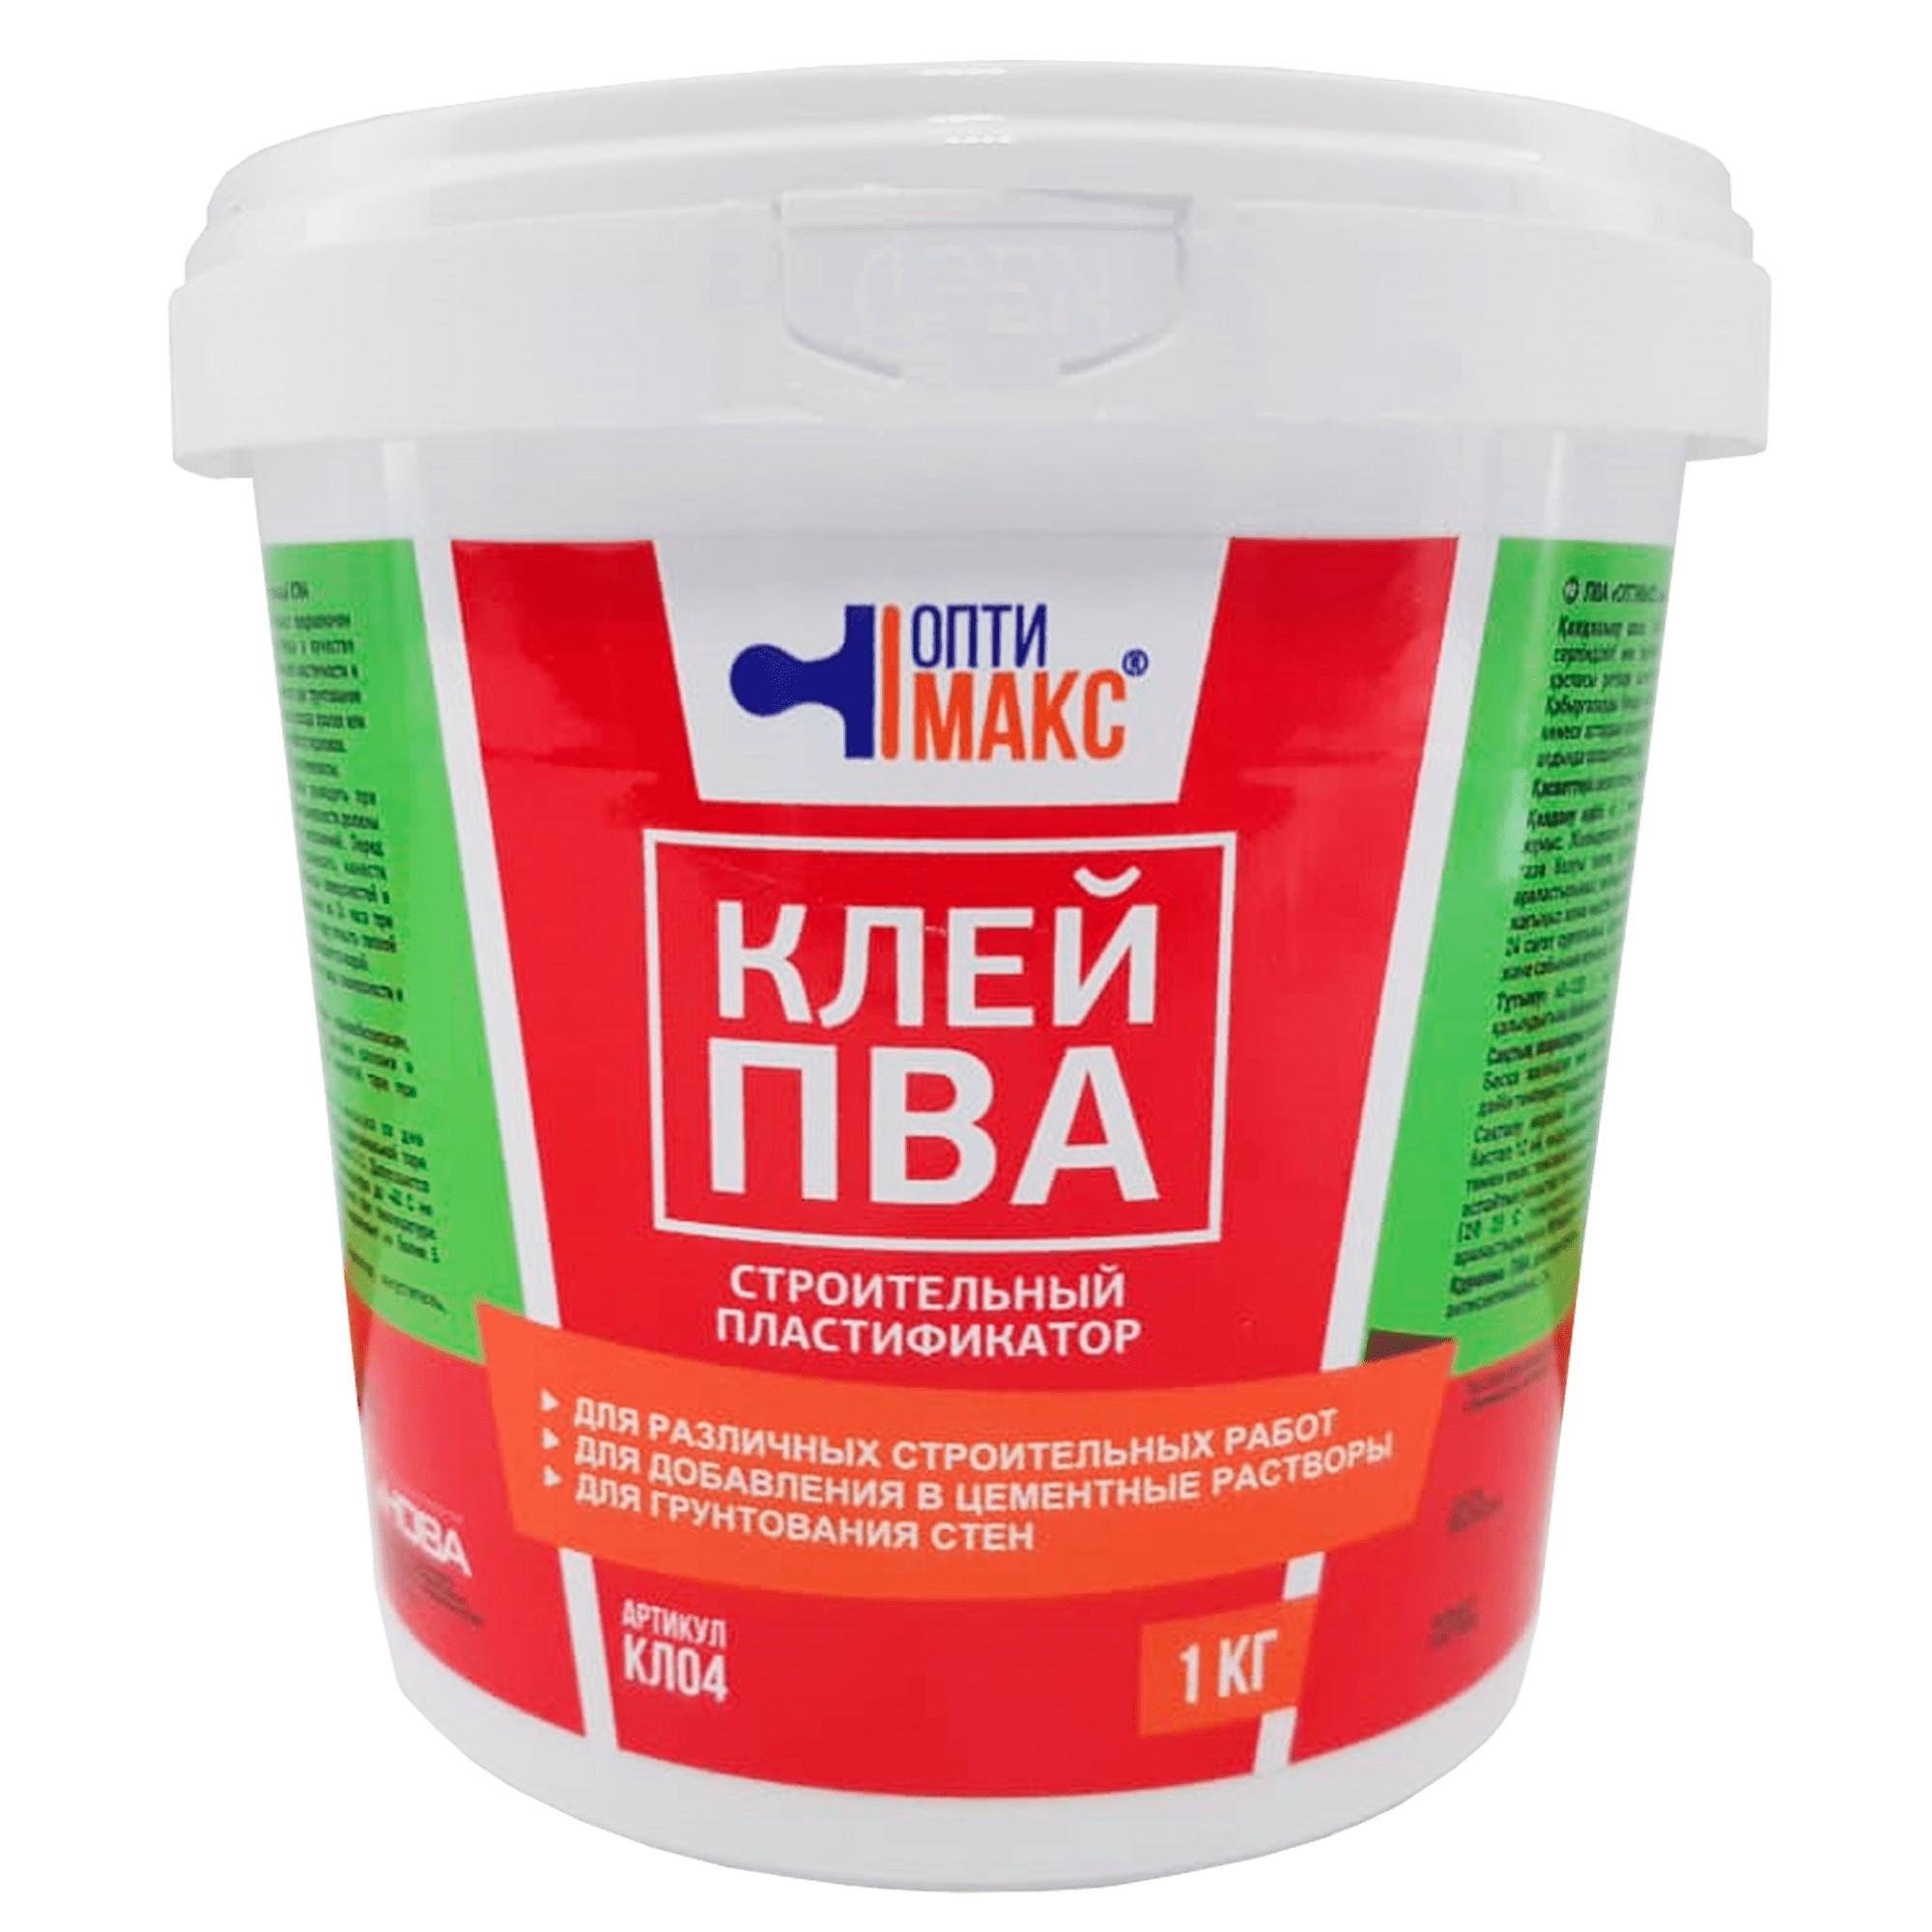 Клей ПВА для пластификации растворов 1 кг – купить в Алматы по цене 960 ...